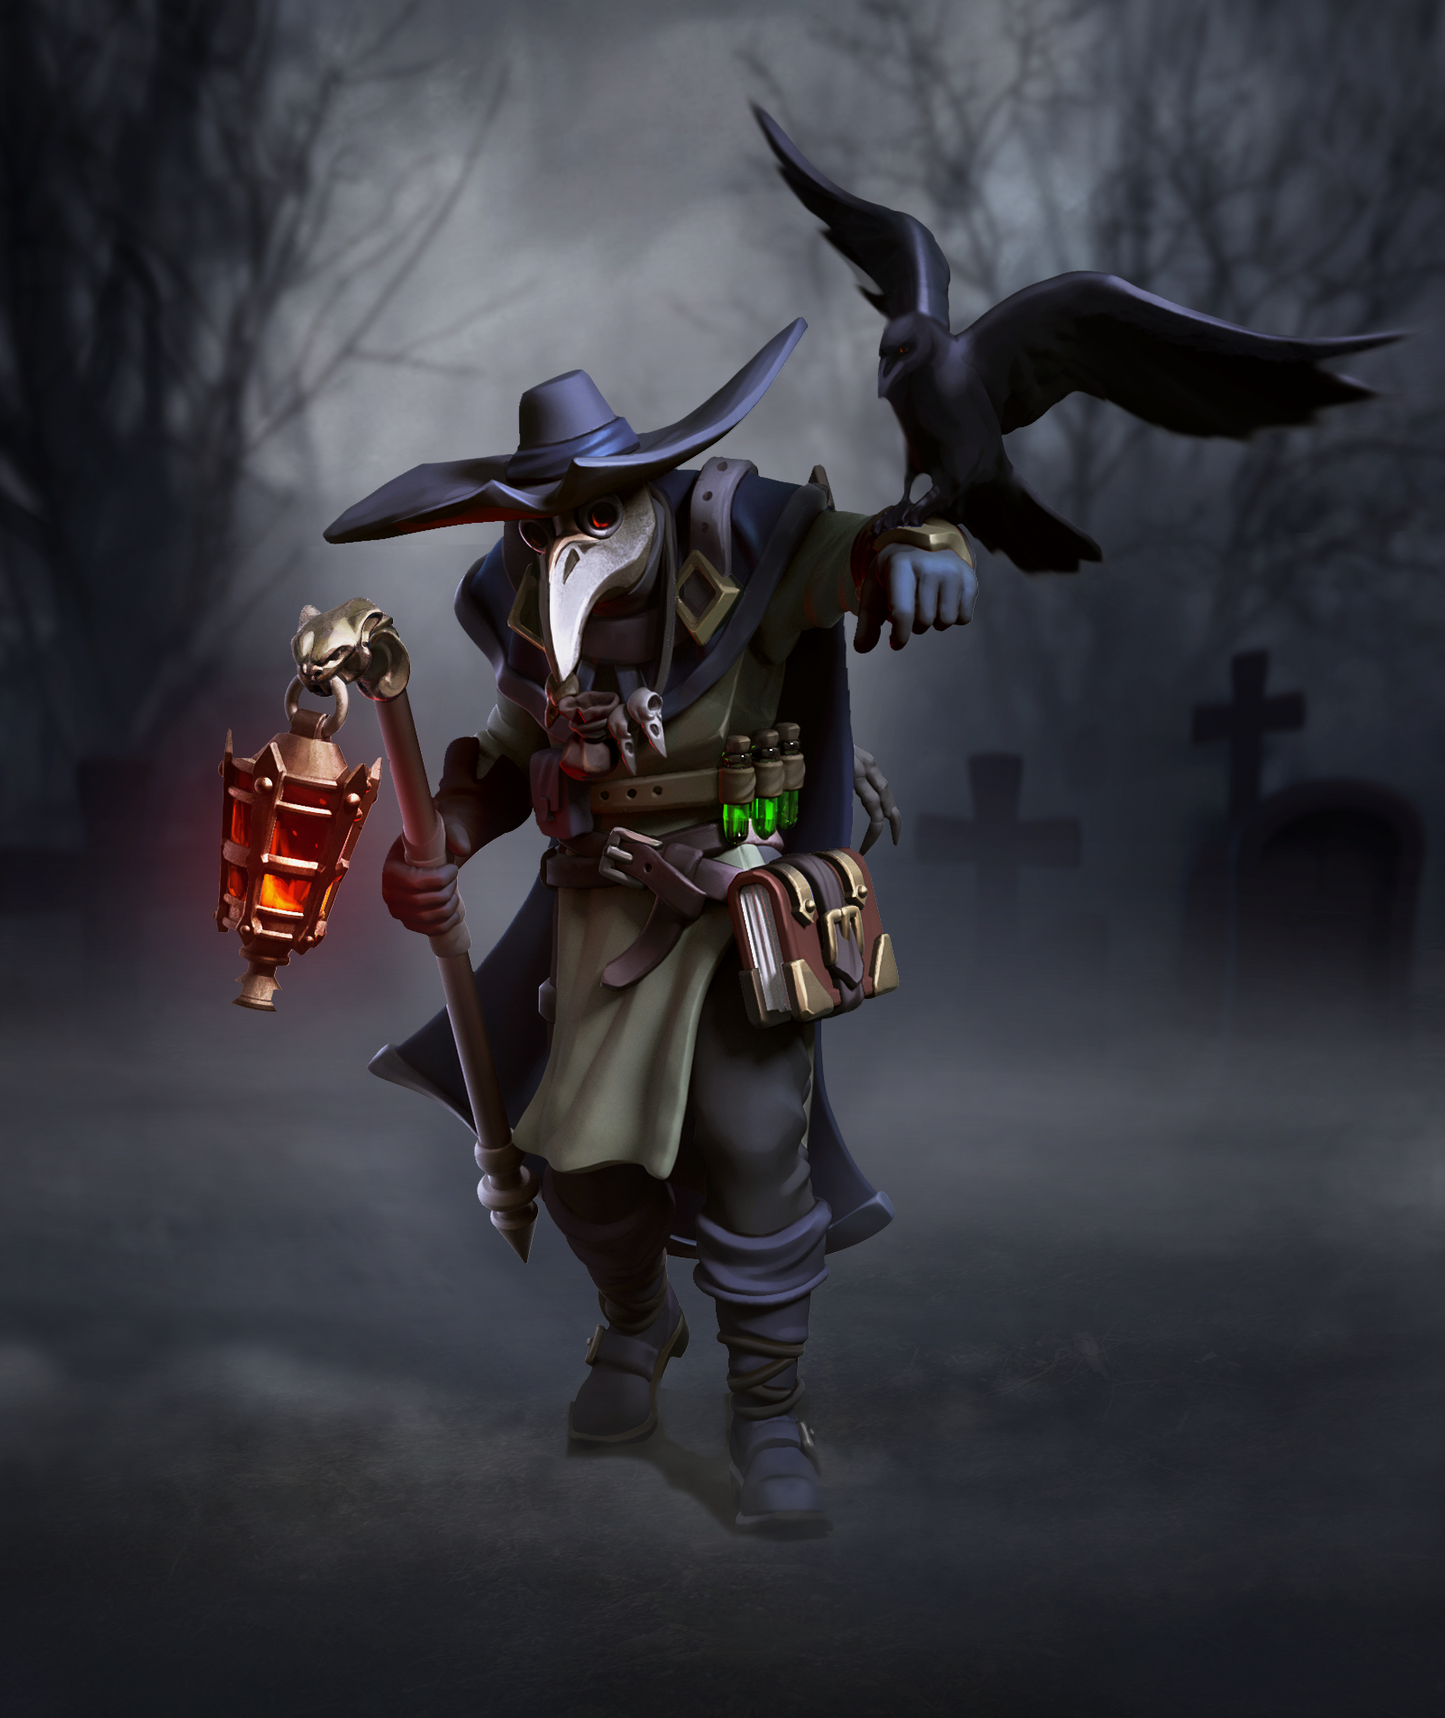 Dr. Corvus the Plague Doctor - Great Grimoire